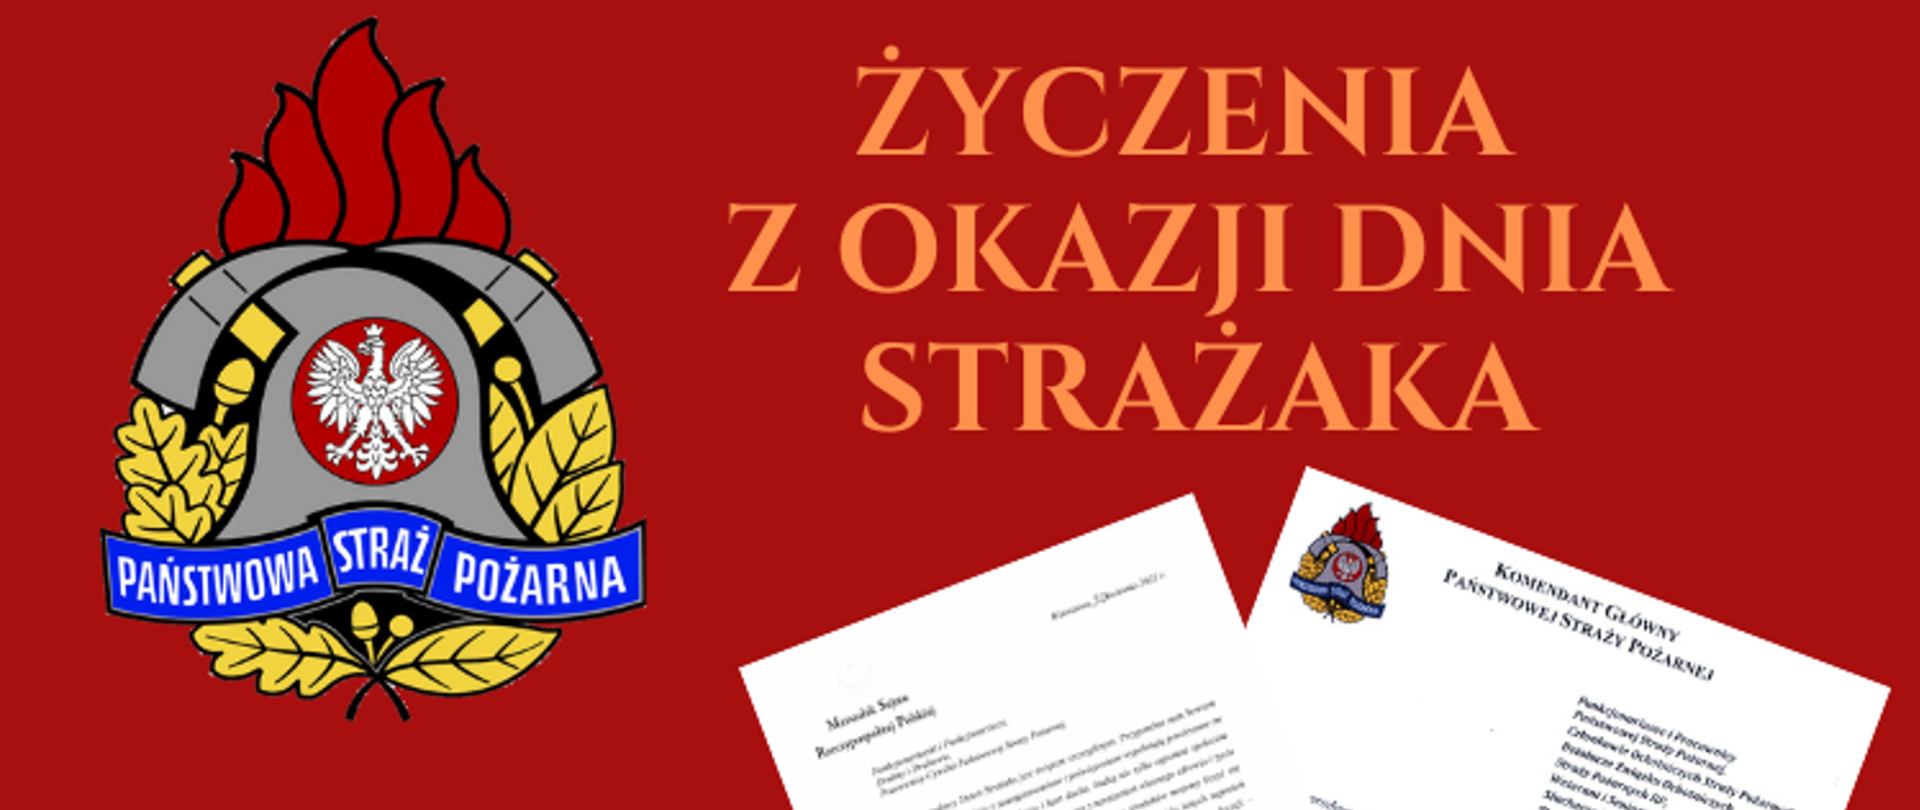 Napis życzenia z okazji Dnia Strażaka na czerwonym tle, po lewej stronie zdjęcia logo PSP.